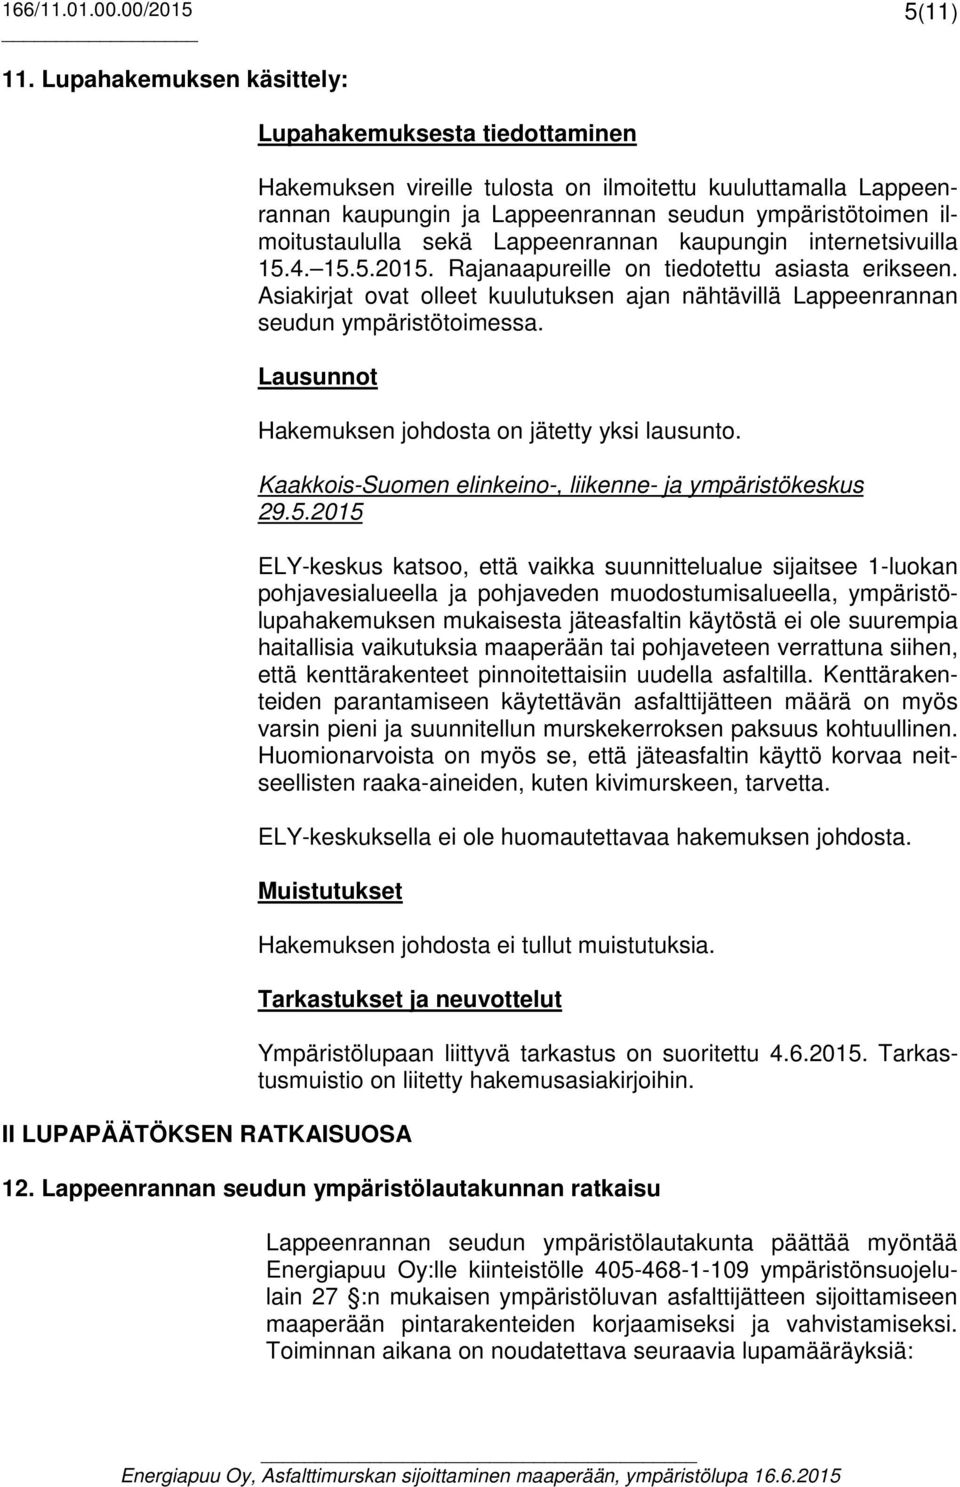 Lappeenrannan kaupungin internetsivuilla 15.4. 15.5.2015. Rajanaapureille on tiedotettu asiasta erikseen. Asiakirjat ovat olleet kuulutuksen ajan nähtävillä Lappeenrannan seudun ympäristötoimessa.